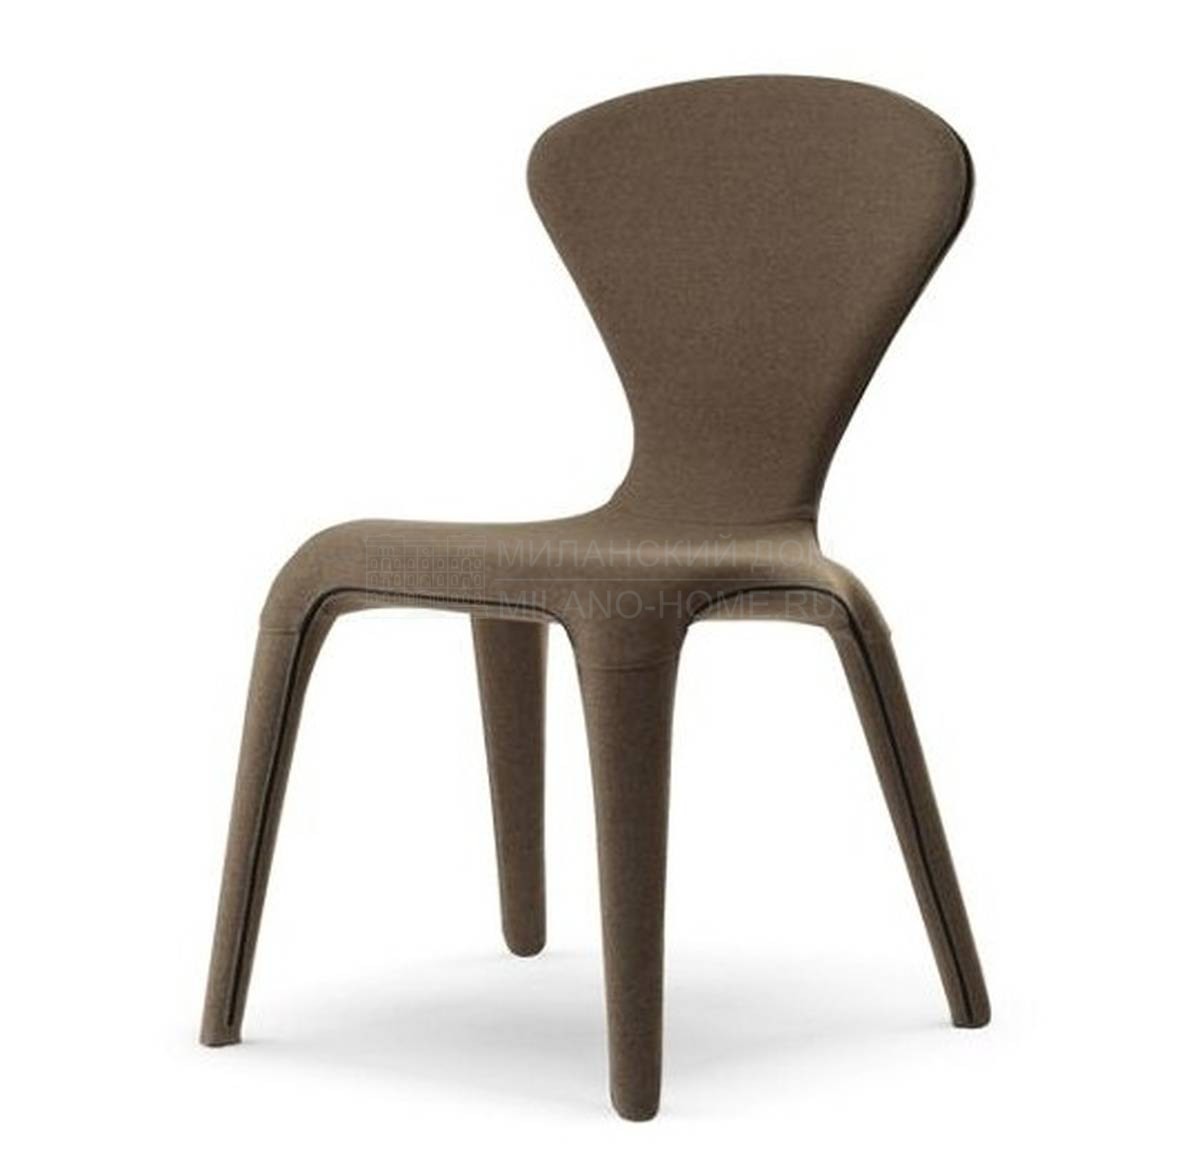 Стул Marylin chair из Франции фабрики ROCHE BOBOIS